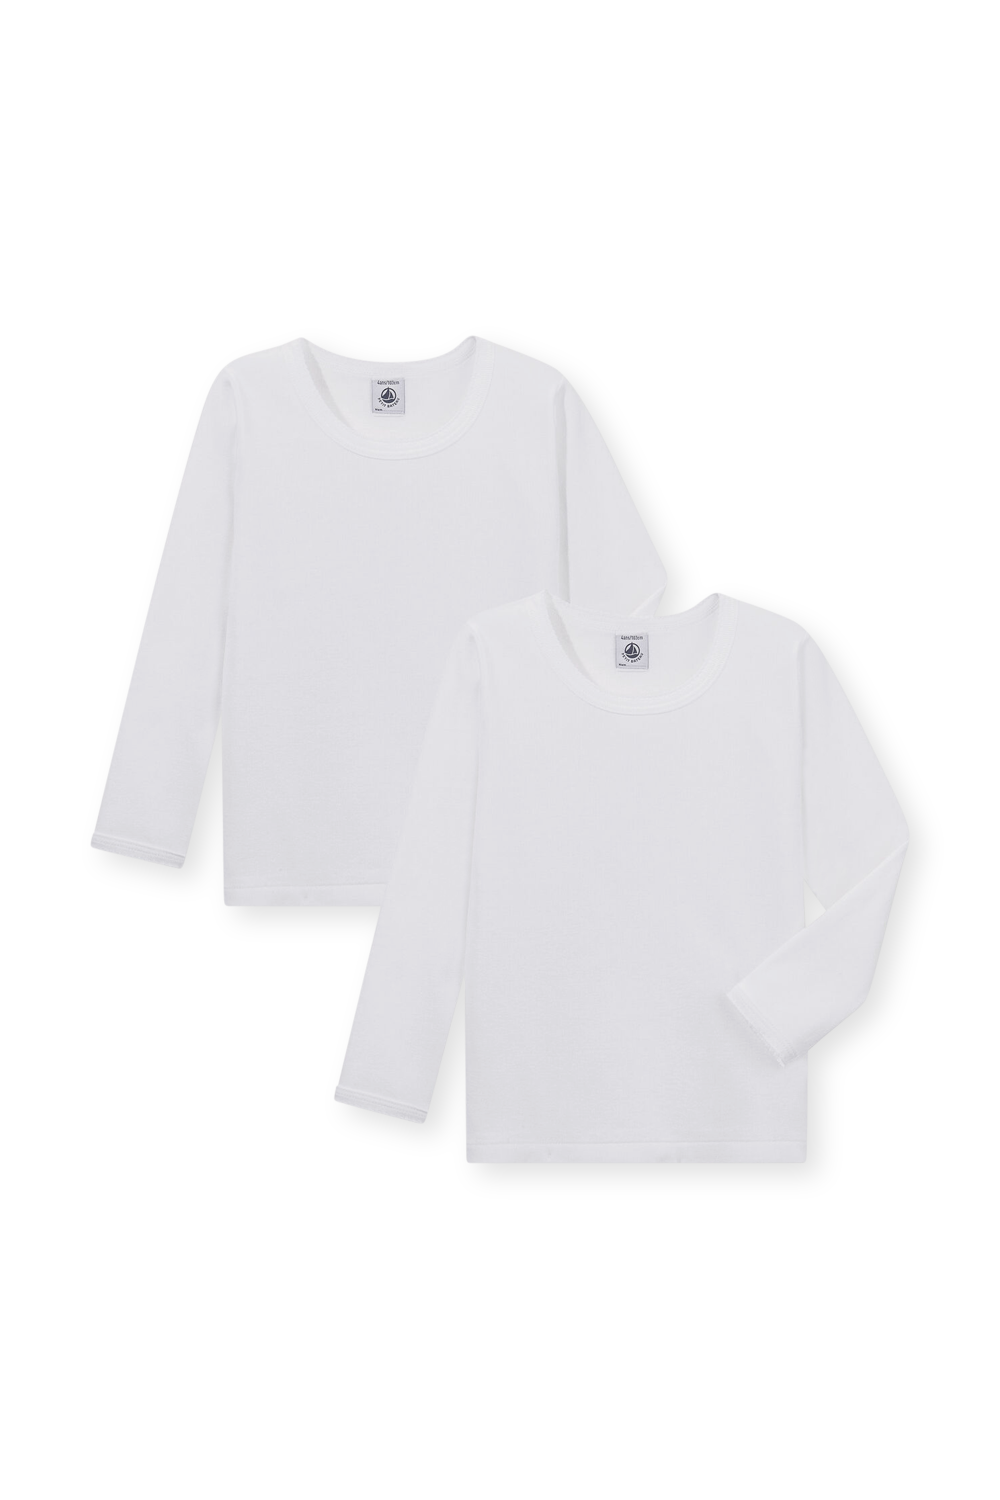 מארז זוג חולצות בגוון לבן בייסיק חלק - גילאי 10-12 PETIT BATEAU